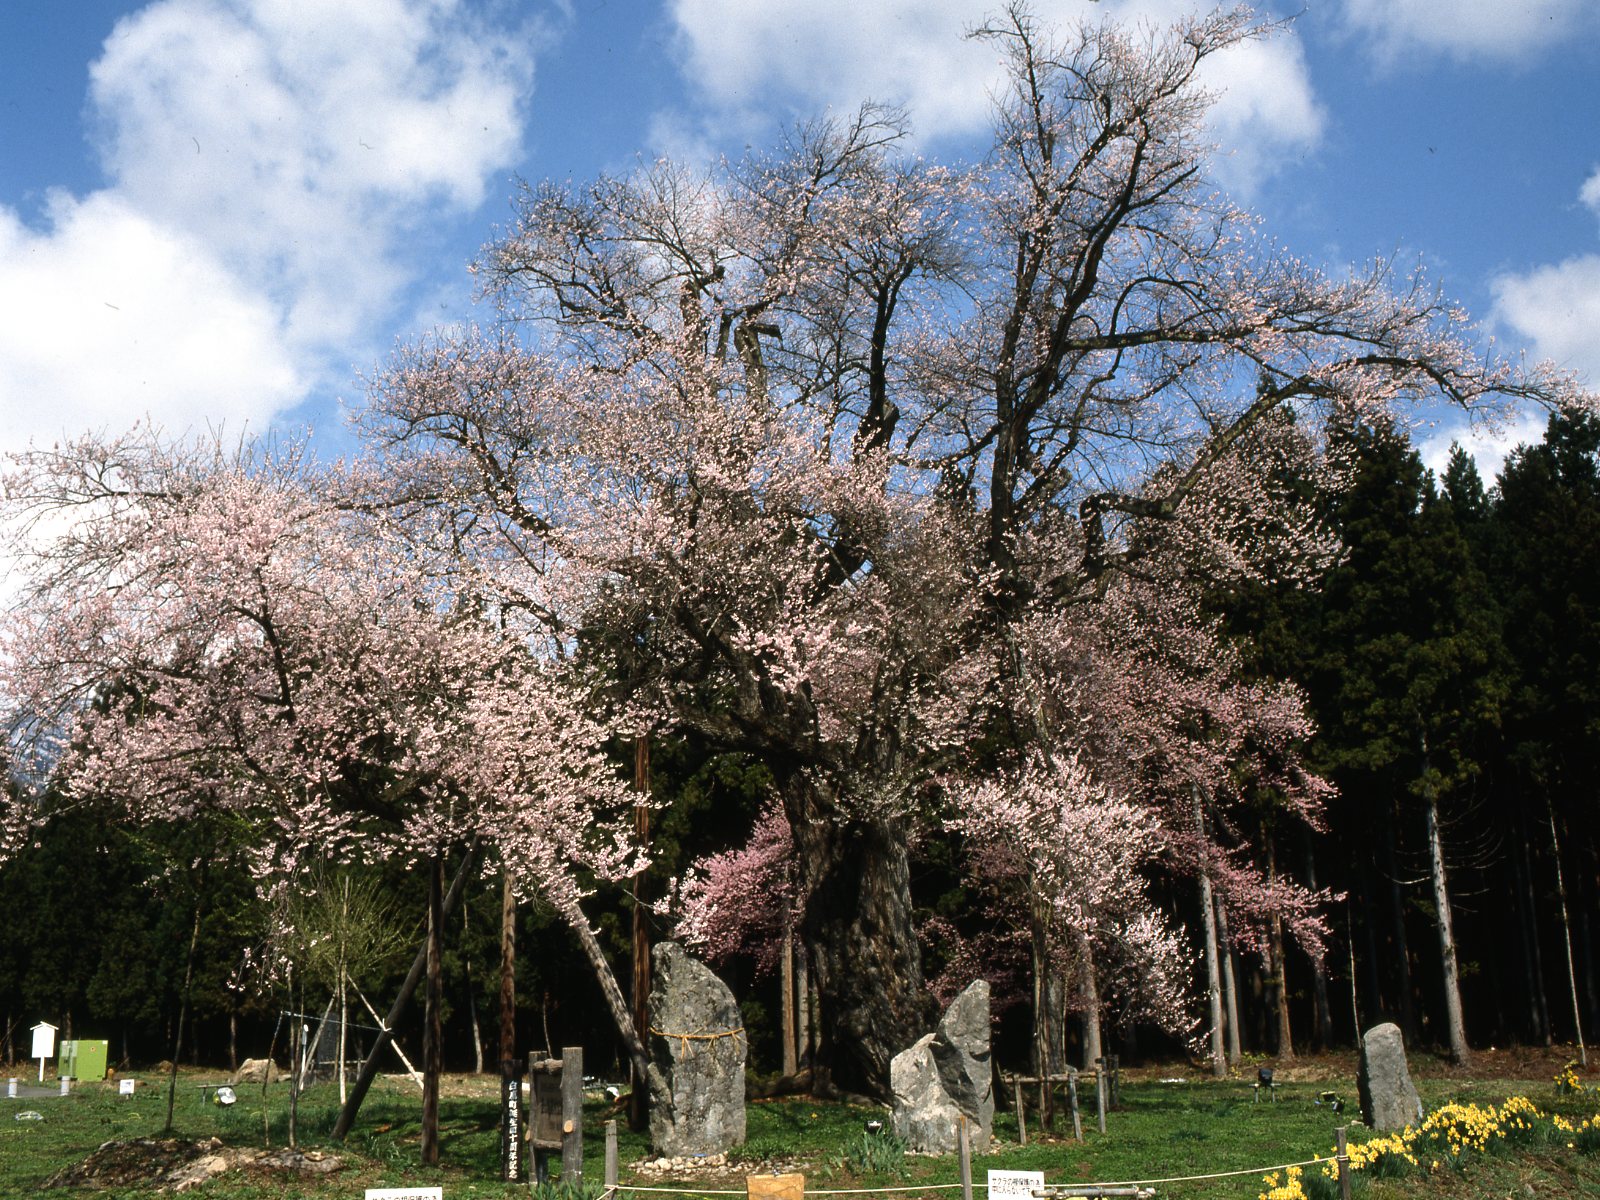 【置賜さくら回廊・釜ノ越さくら】車で35分程、県指定天然記念物の樹齢約八百年の桜の巨木が見事